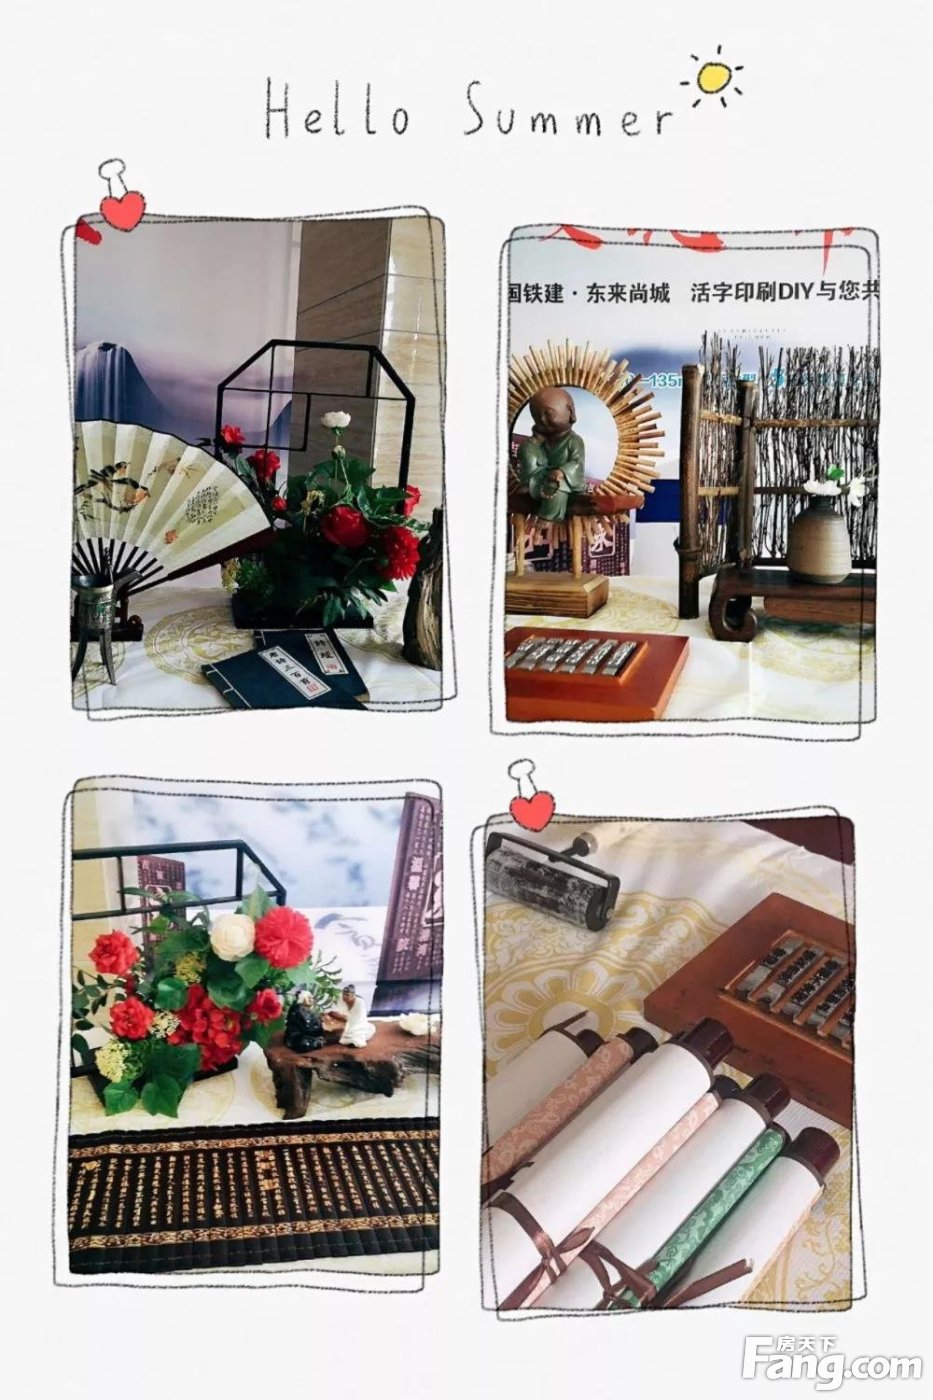 【中国铁建·东来尚城】中国传统文化-活字印刷术体验活动